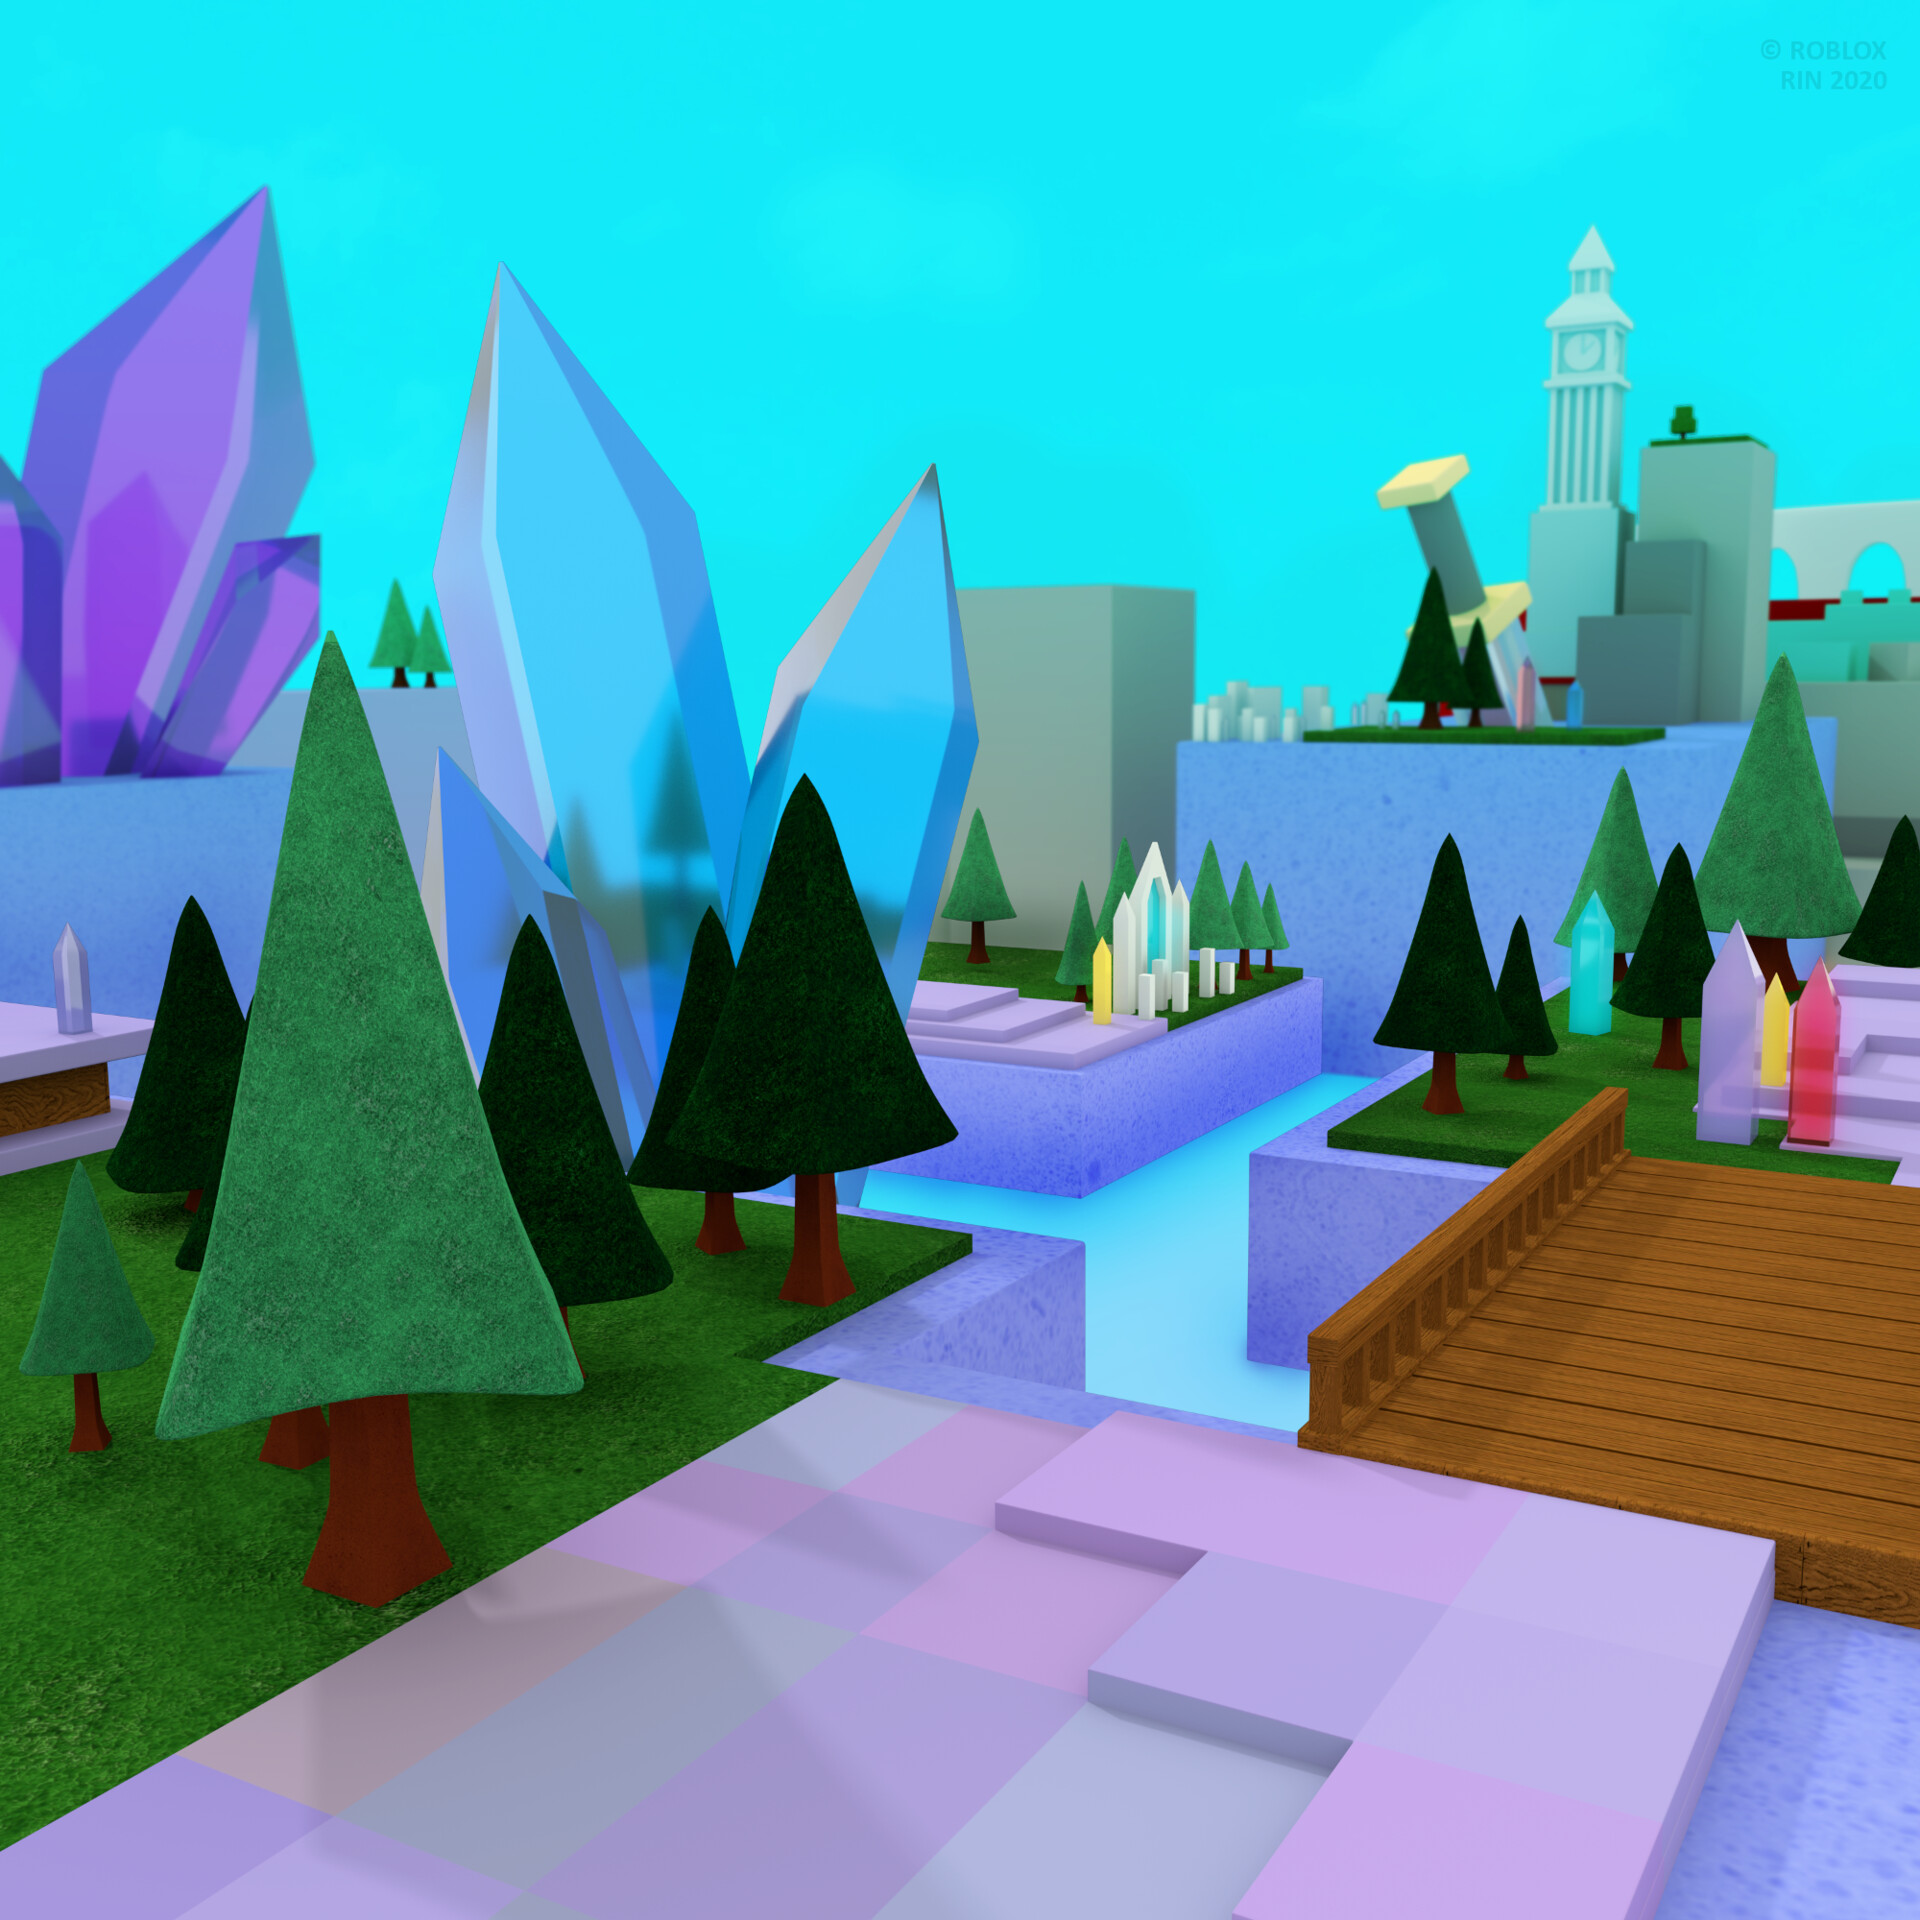 Hòa mình vào thế giới đầy kỳ ảo, những chiếc đồ chơi Roblox Kingdom Simulator sẽ đưa bạn vào trò chơi phiêu lưu và xây dựng một đế chế vô cùng thú vị. Với hình nền Roblox Kingdom Simulator Toy Background, bạn sẽ cùng những nhân vật trong trò chơi khám phá vùng đất mới và tạo ra một vương quốc đầy màu sắc.